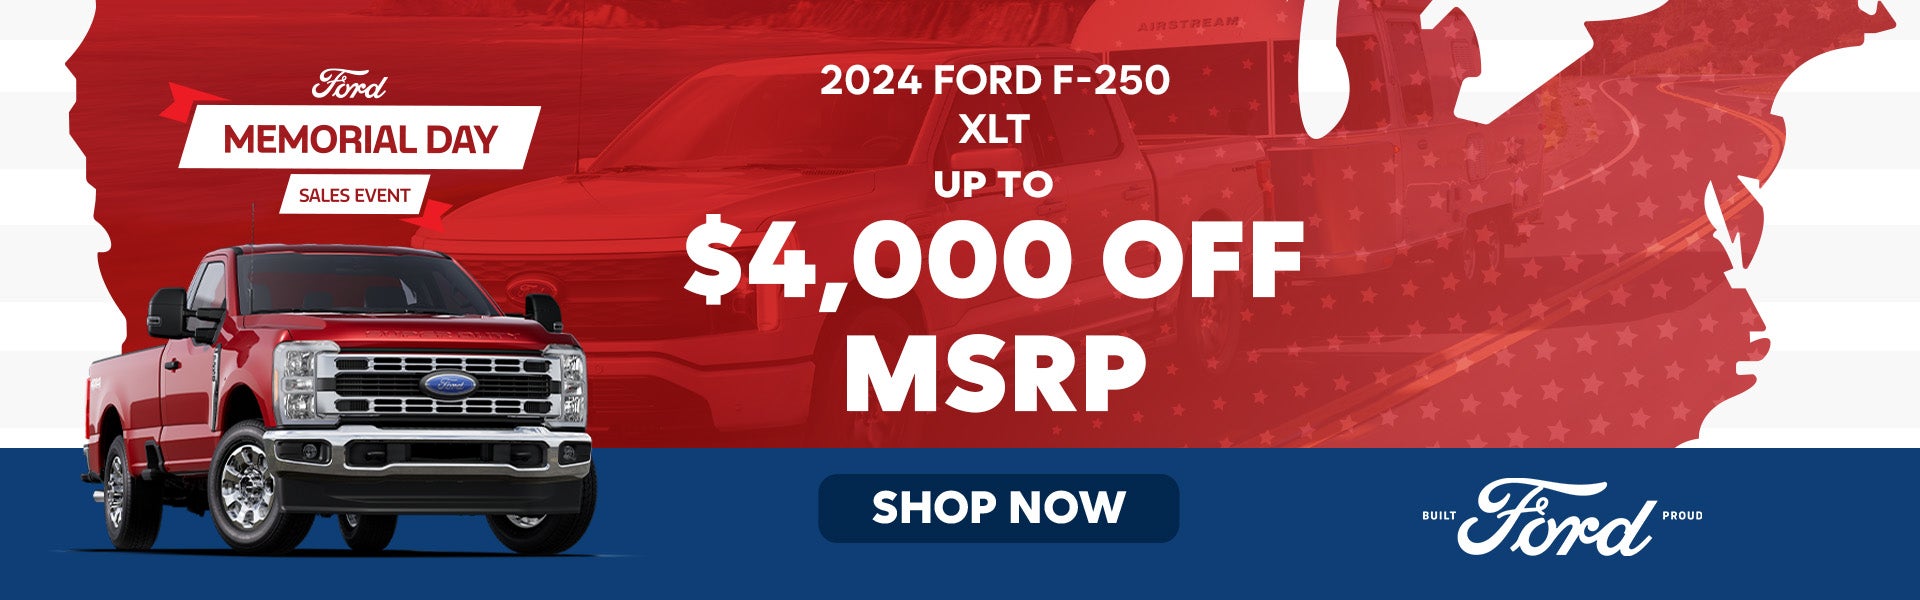 2024 Ford F-250 XLT 